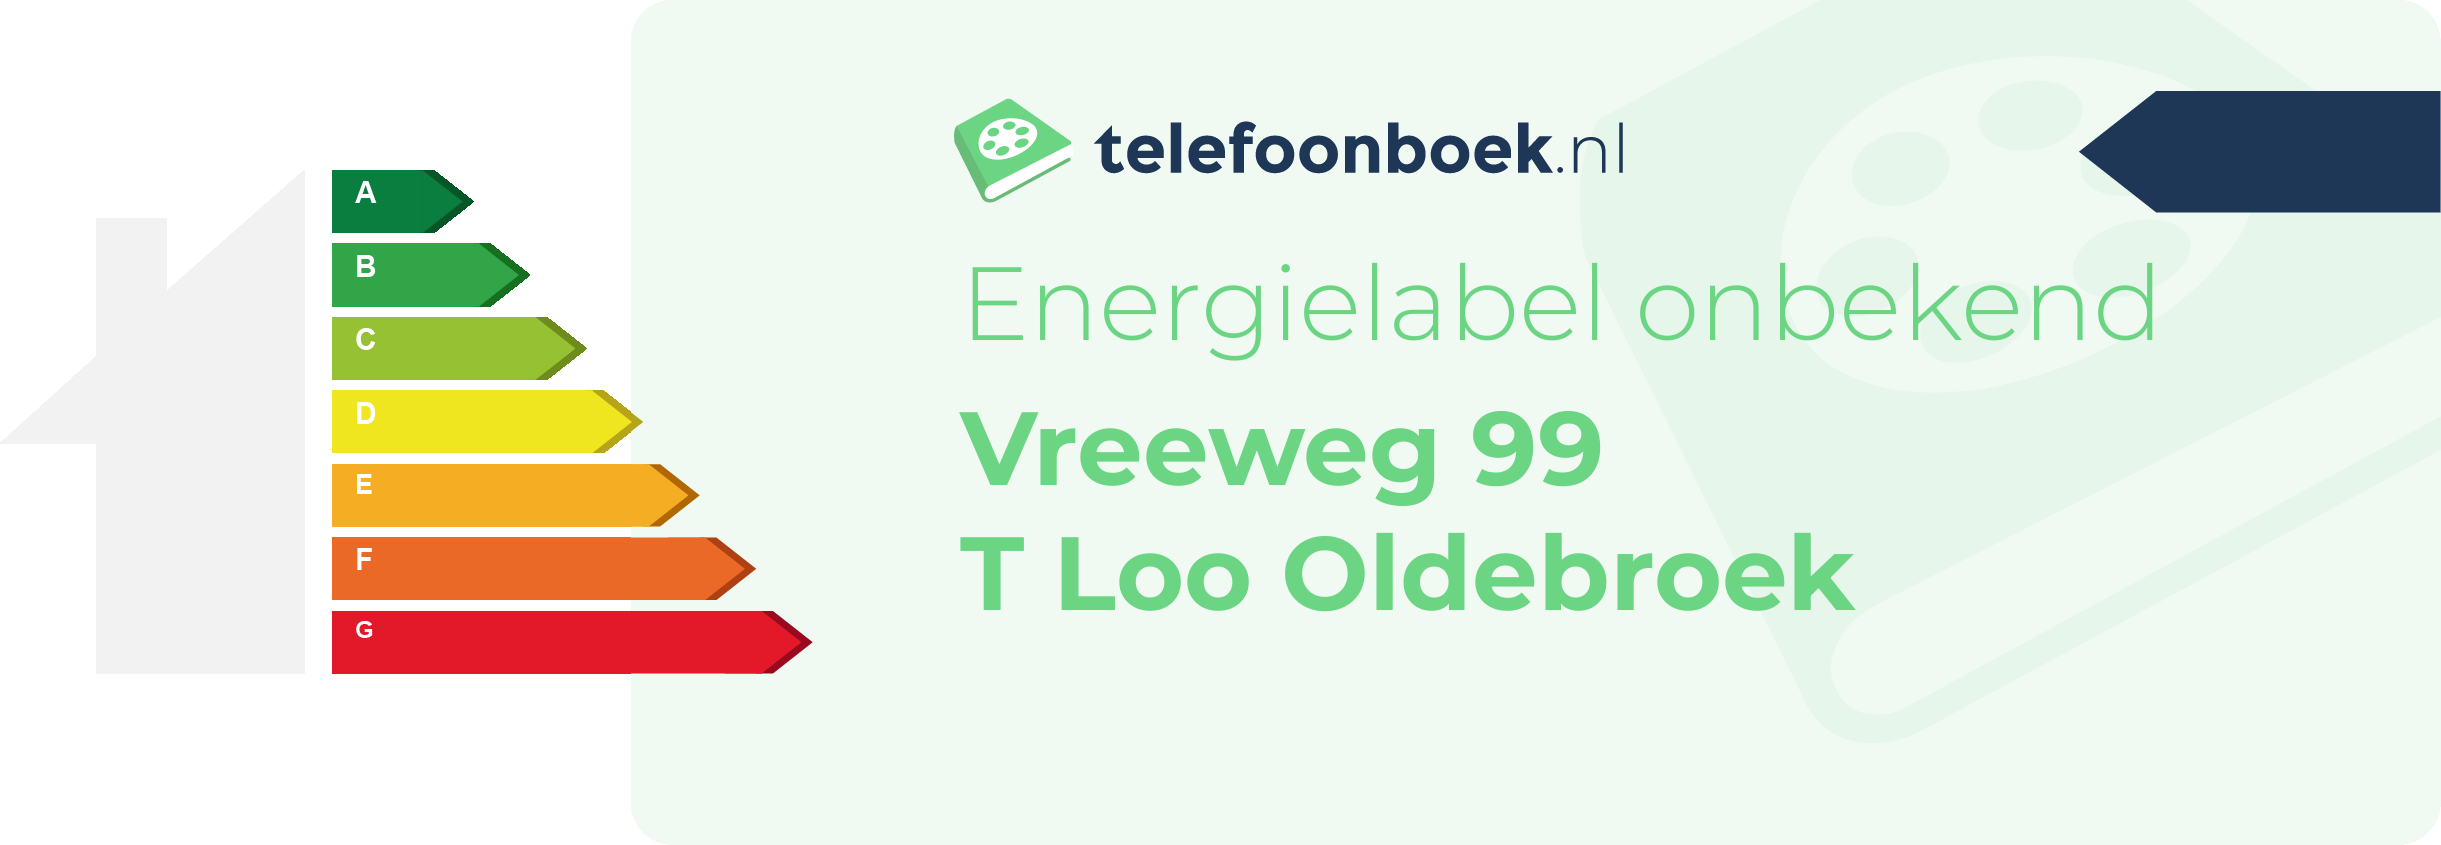 Energielabel Vreeweg 99 T Loo Oldebroek